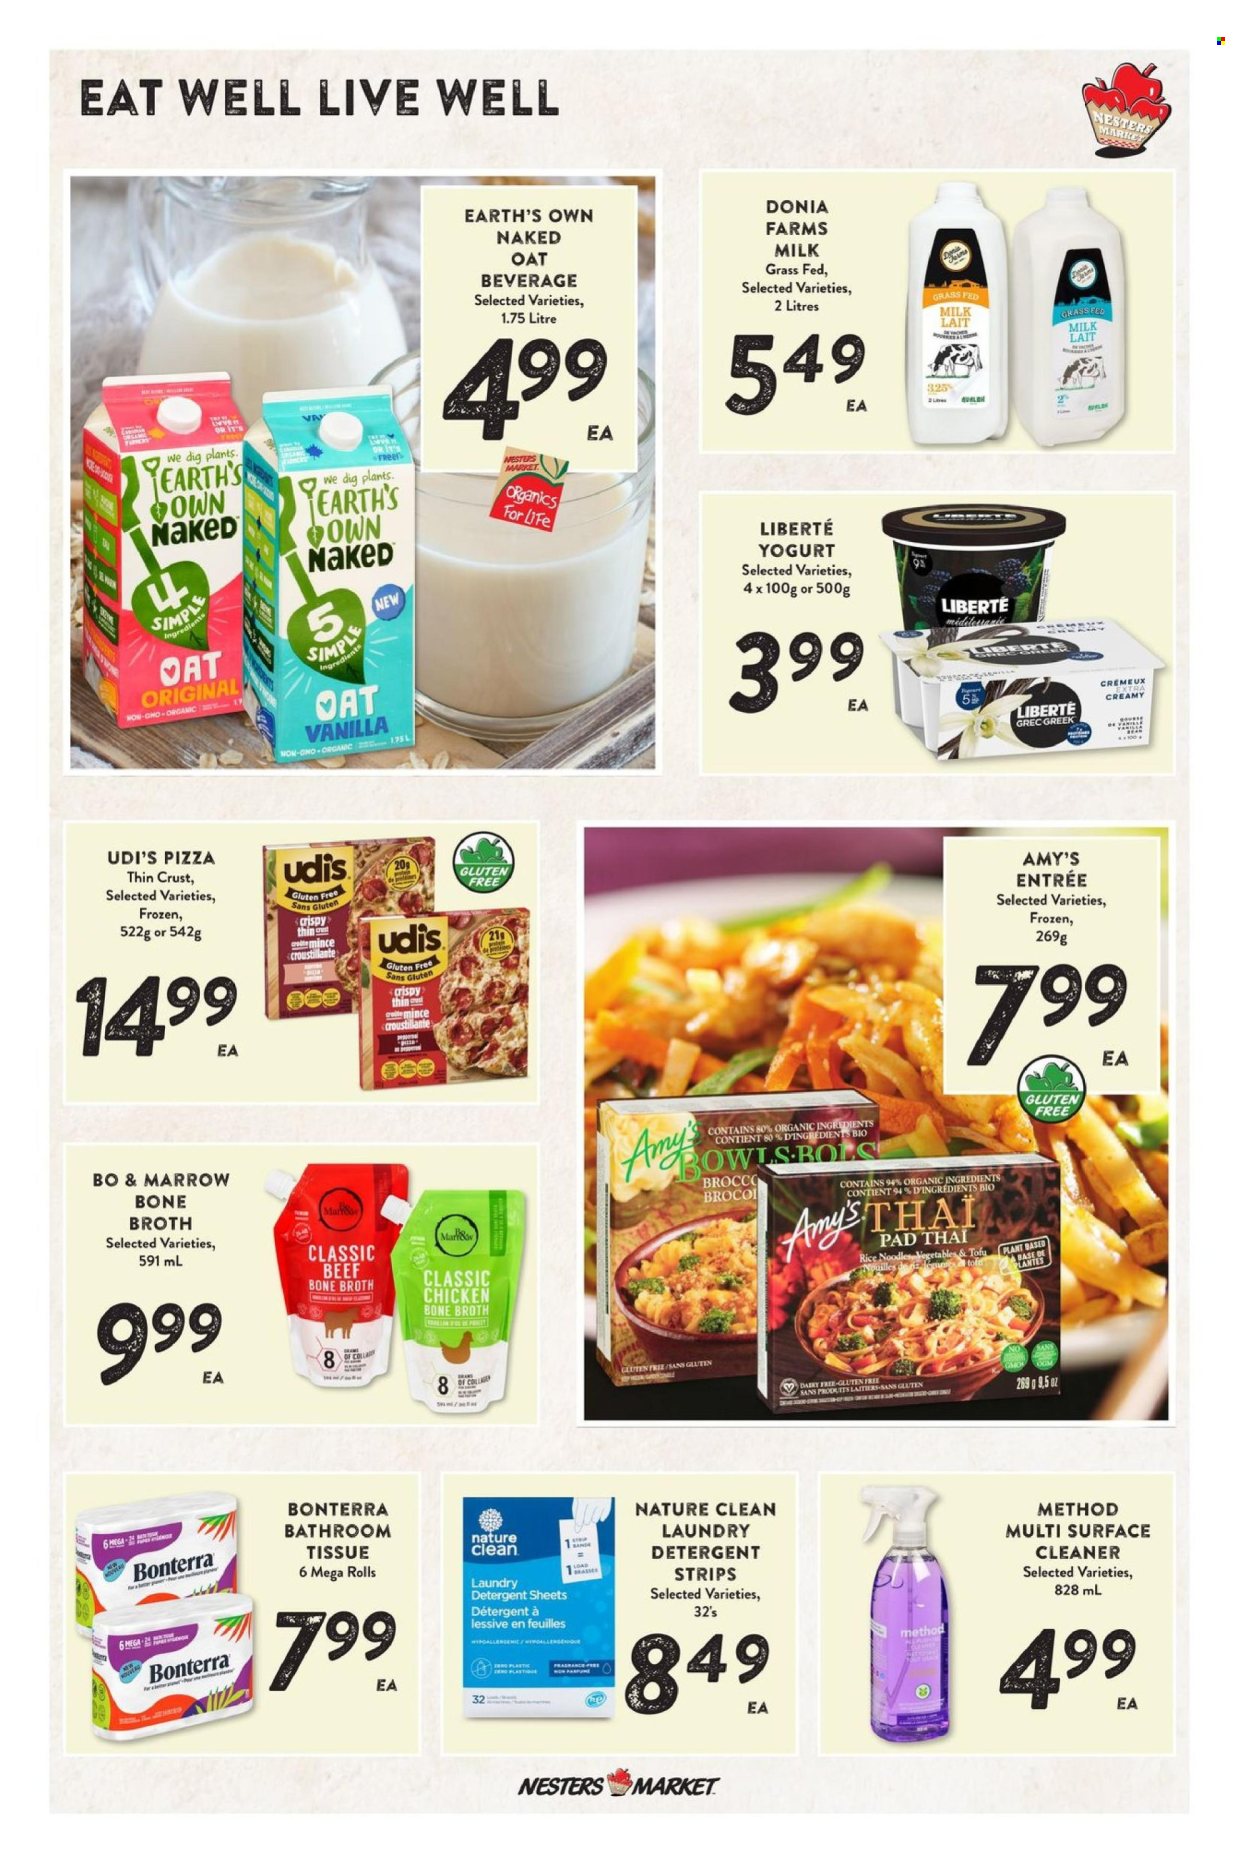 Nesters Food Market flyer  - April 11, 2024 - April 17, 2024.